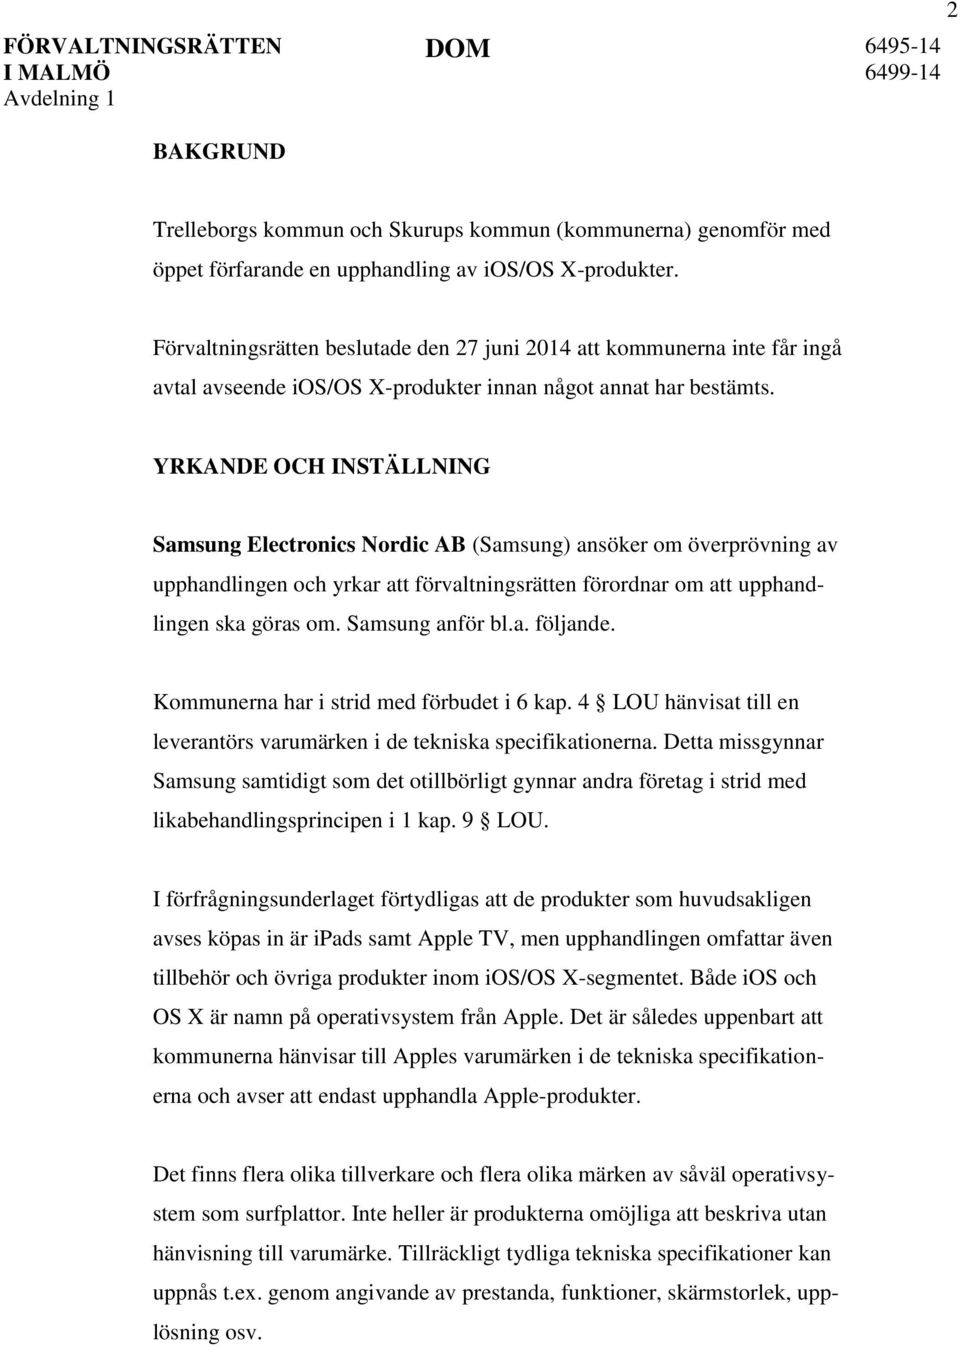 YRKANDE OCH INSTÄLLNING Samsung Electronics Nordic AB (Samsung) ansöker om överprövning av upphandlingen och yrkar att förvaltningsrätten förordnar om att upphandlingen ska göras om. Samsung anför bl.